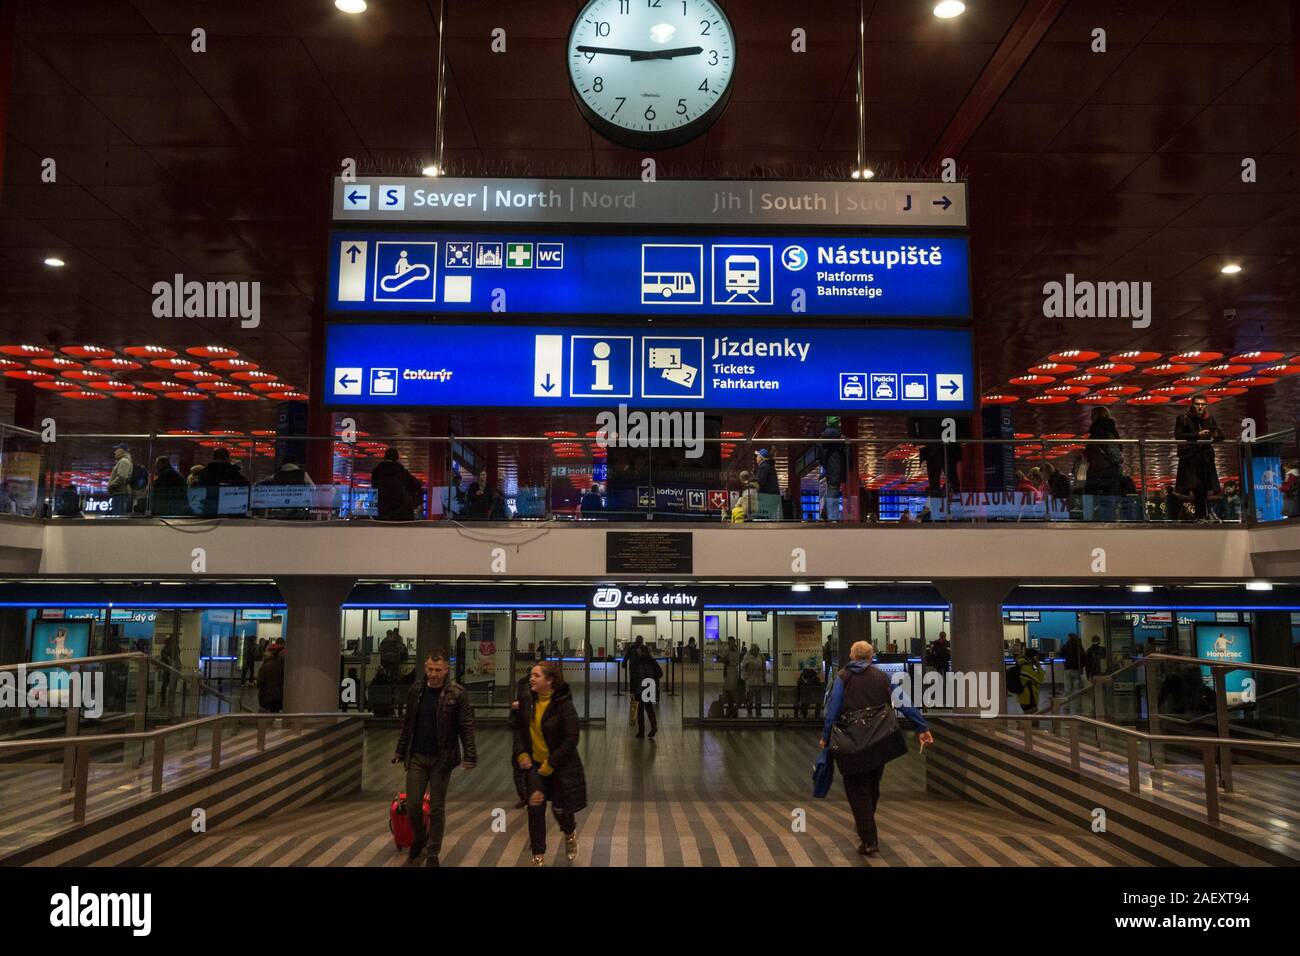 PRAGUE, Repubblica Ceca - 31 ottobre 2019: biglietteria e cabina di Ceske drahy, le ferrovie ceche, in Praha Hlavni Nadrazi stazione ferroviaria con passen Foto Stock